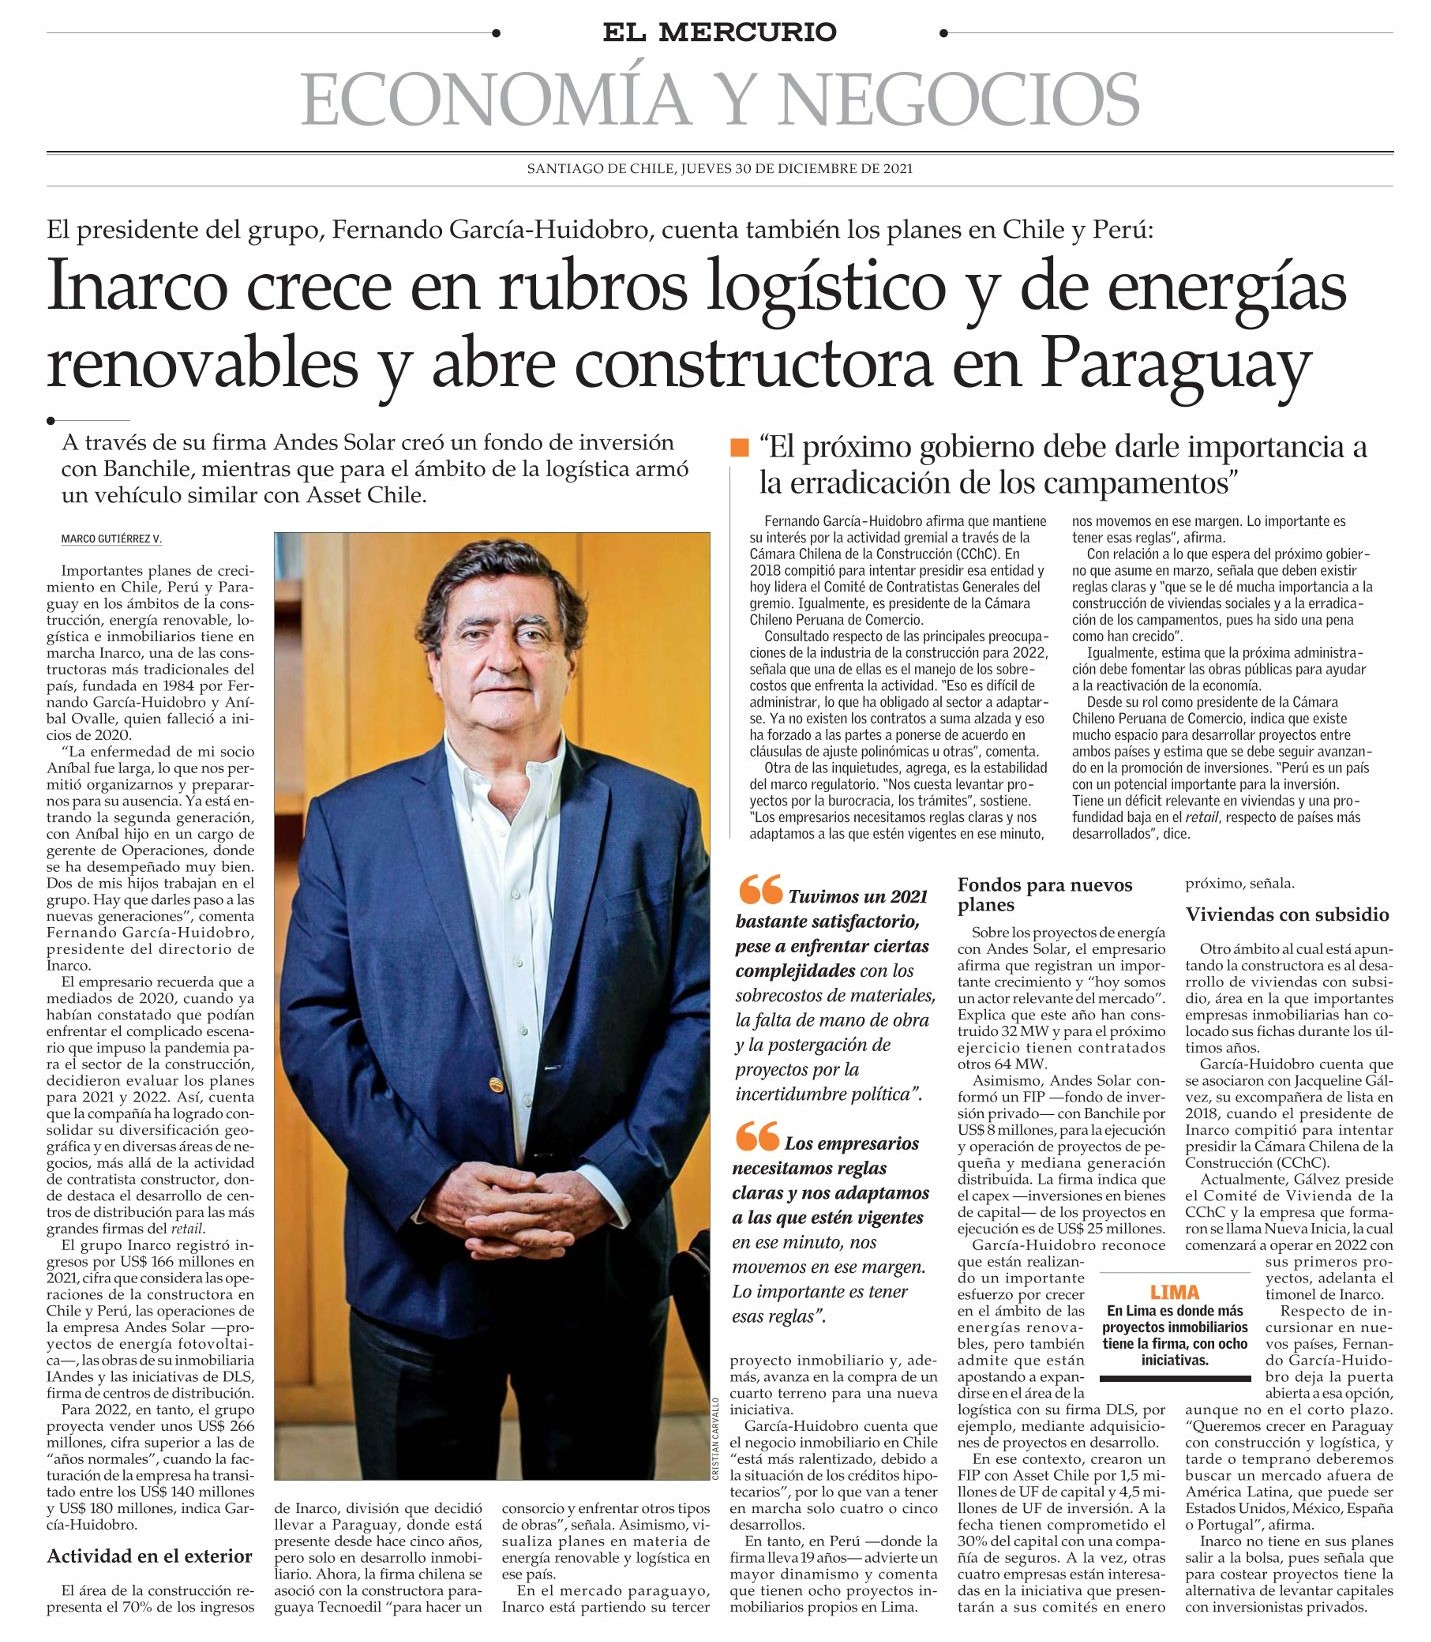 Inarco crece en rubros logístico y de energías renovables y abre constructora en Paraguay